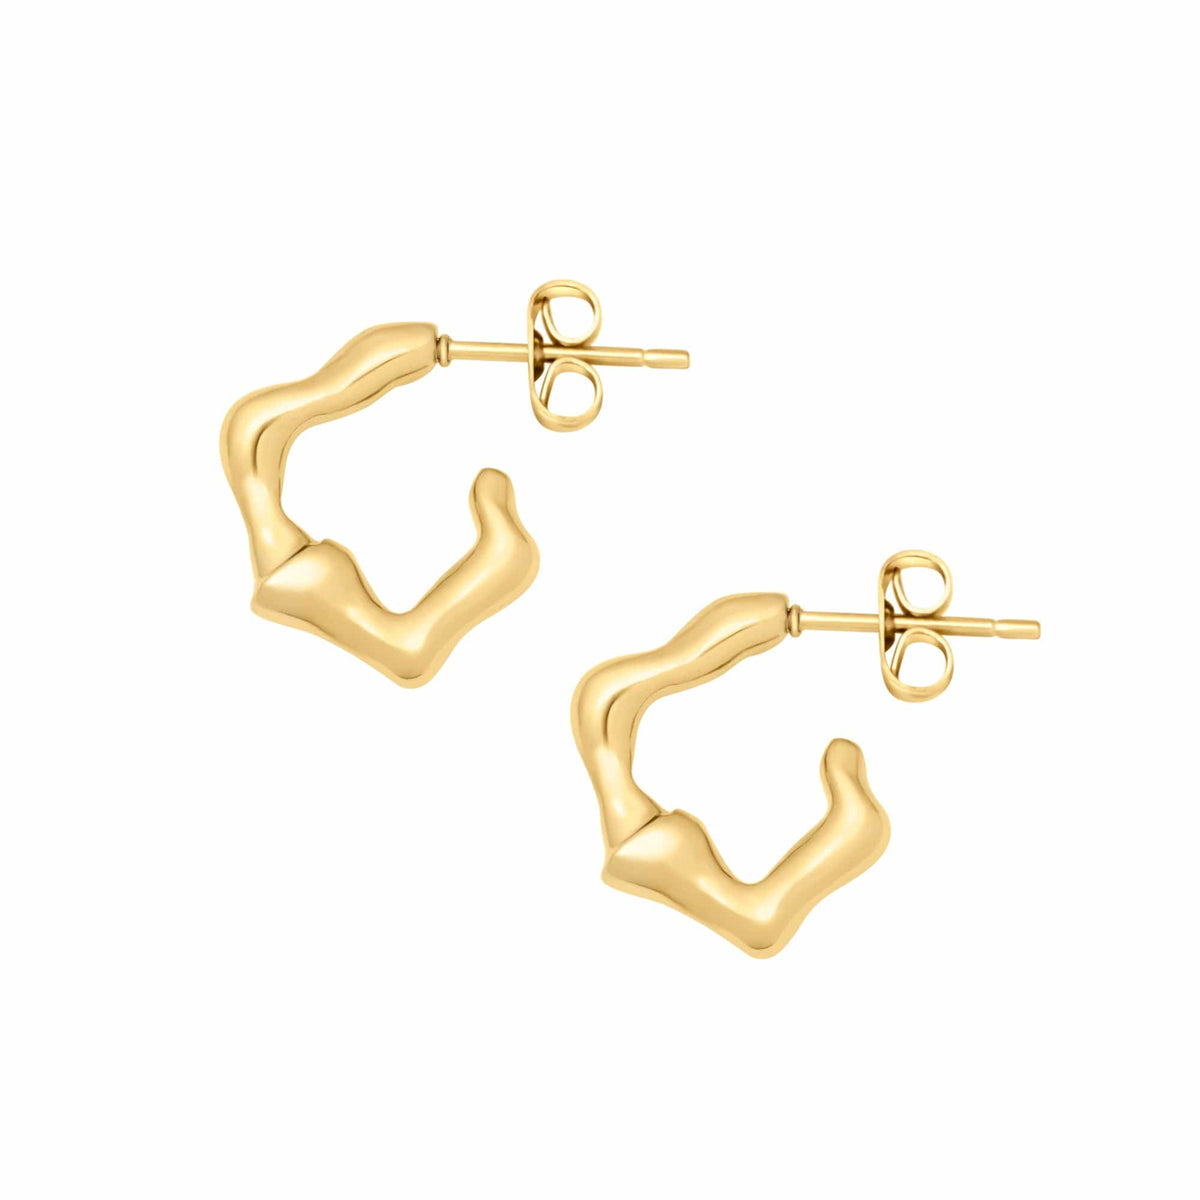 BOHOMOON Stainless Steel Lupita Hoop Earrings Gold